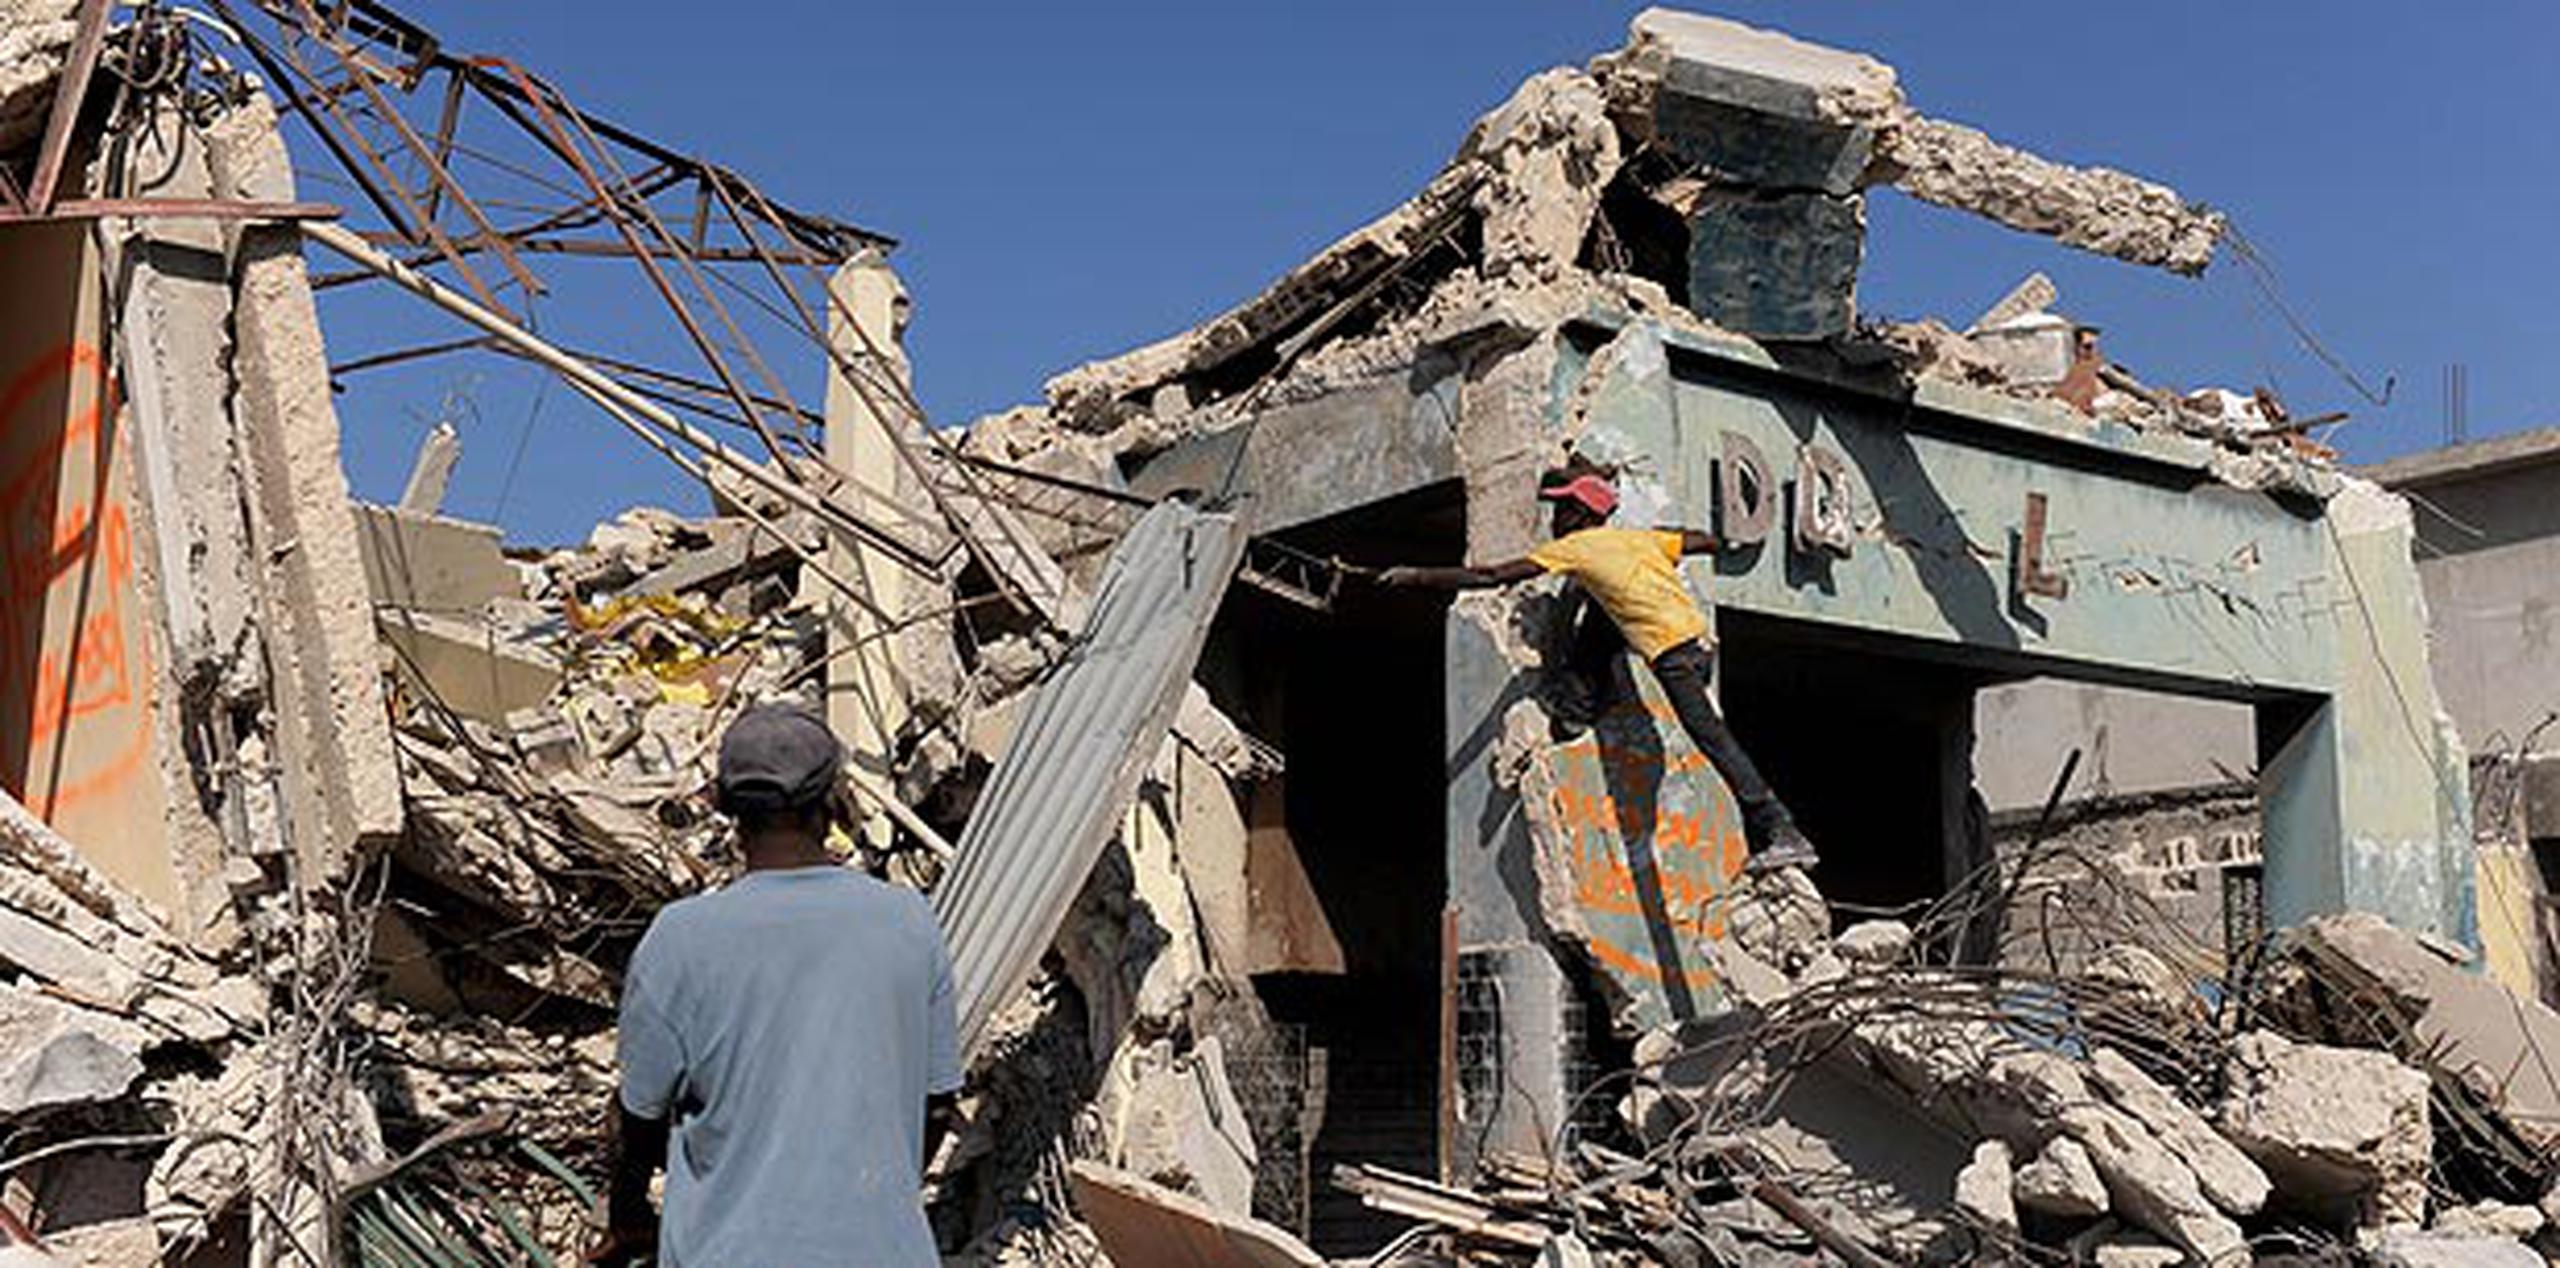 El terremoto de Haití, que causó la muerte a cerca de 300,000 personas, ocurrió el 12 de enero de 2010 con una magnitud de 7.0. (Archivo)